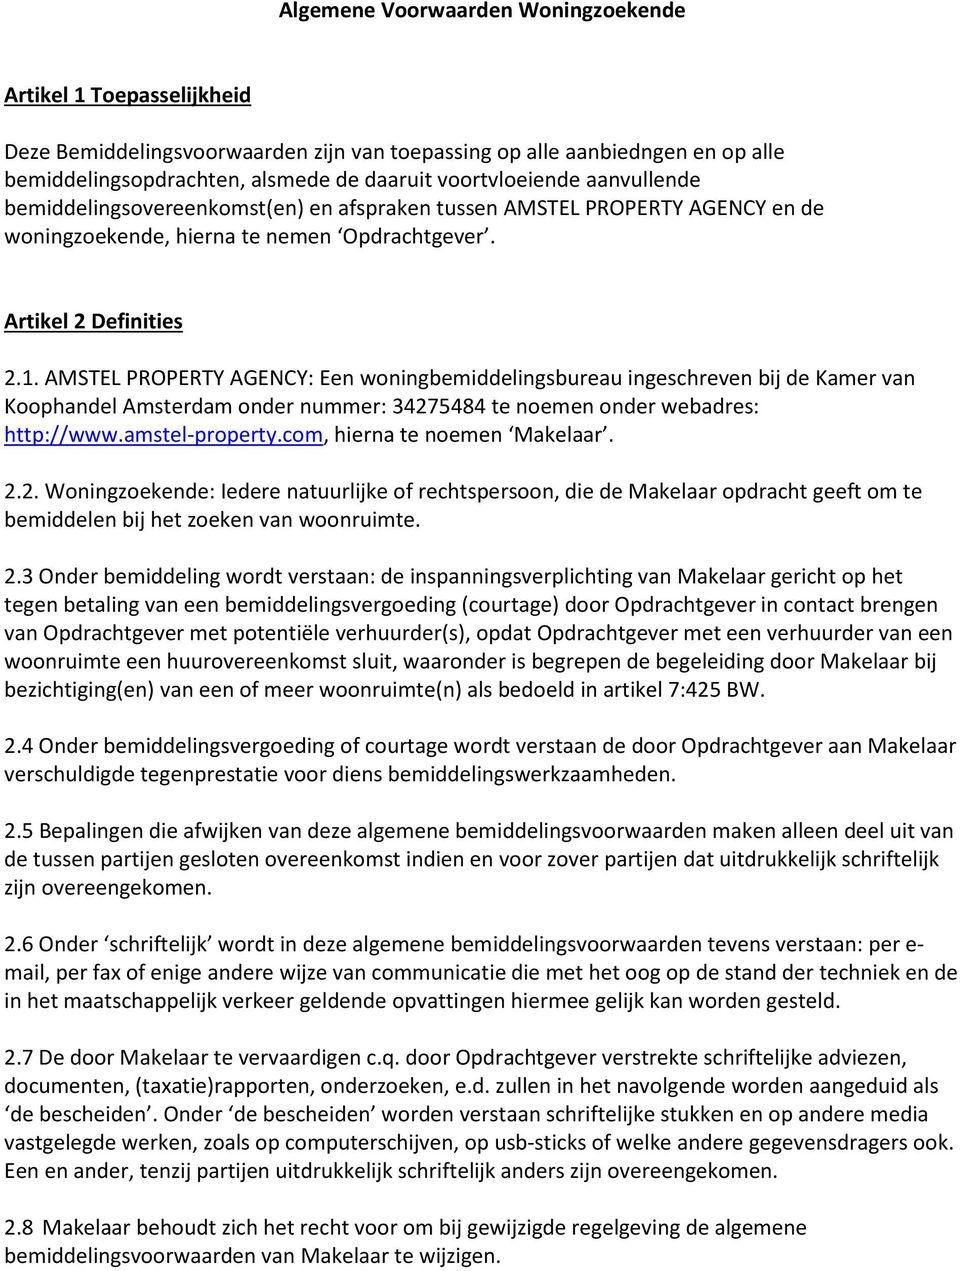 AMSTEL PROPERTY AGENCY: Een woningbemiddelingsbureau ingeschreven bij de Kamer van Koophandel Amsterdam onder nummer: 34275484 te noemen onder webadres: http://www.amstel-property.